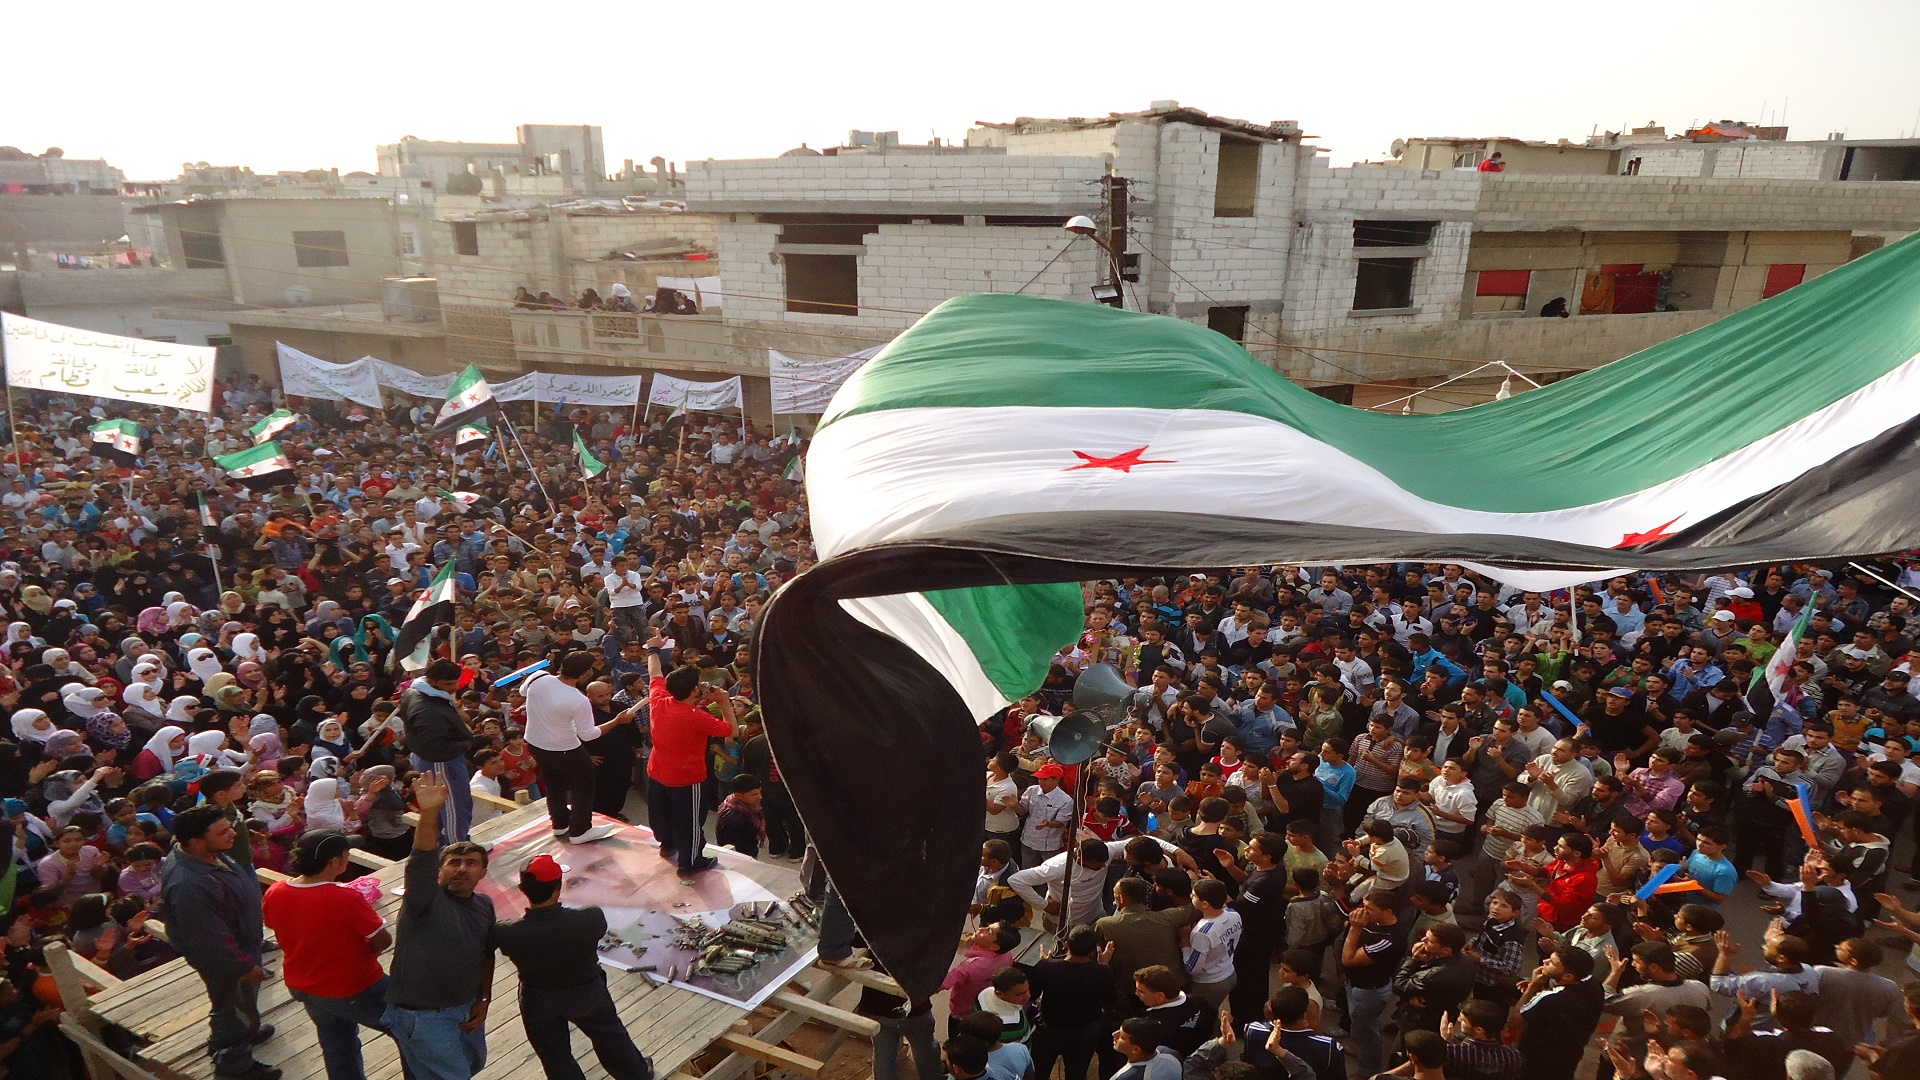 ثورة السوريين.. من الهتاف إلى البندقية